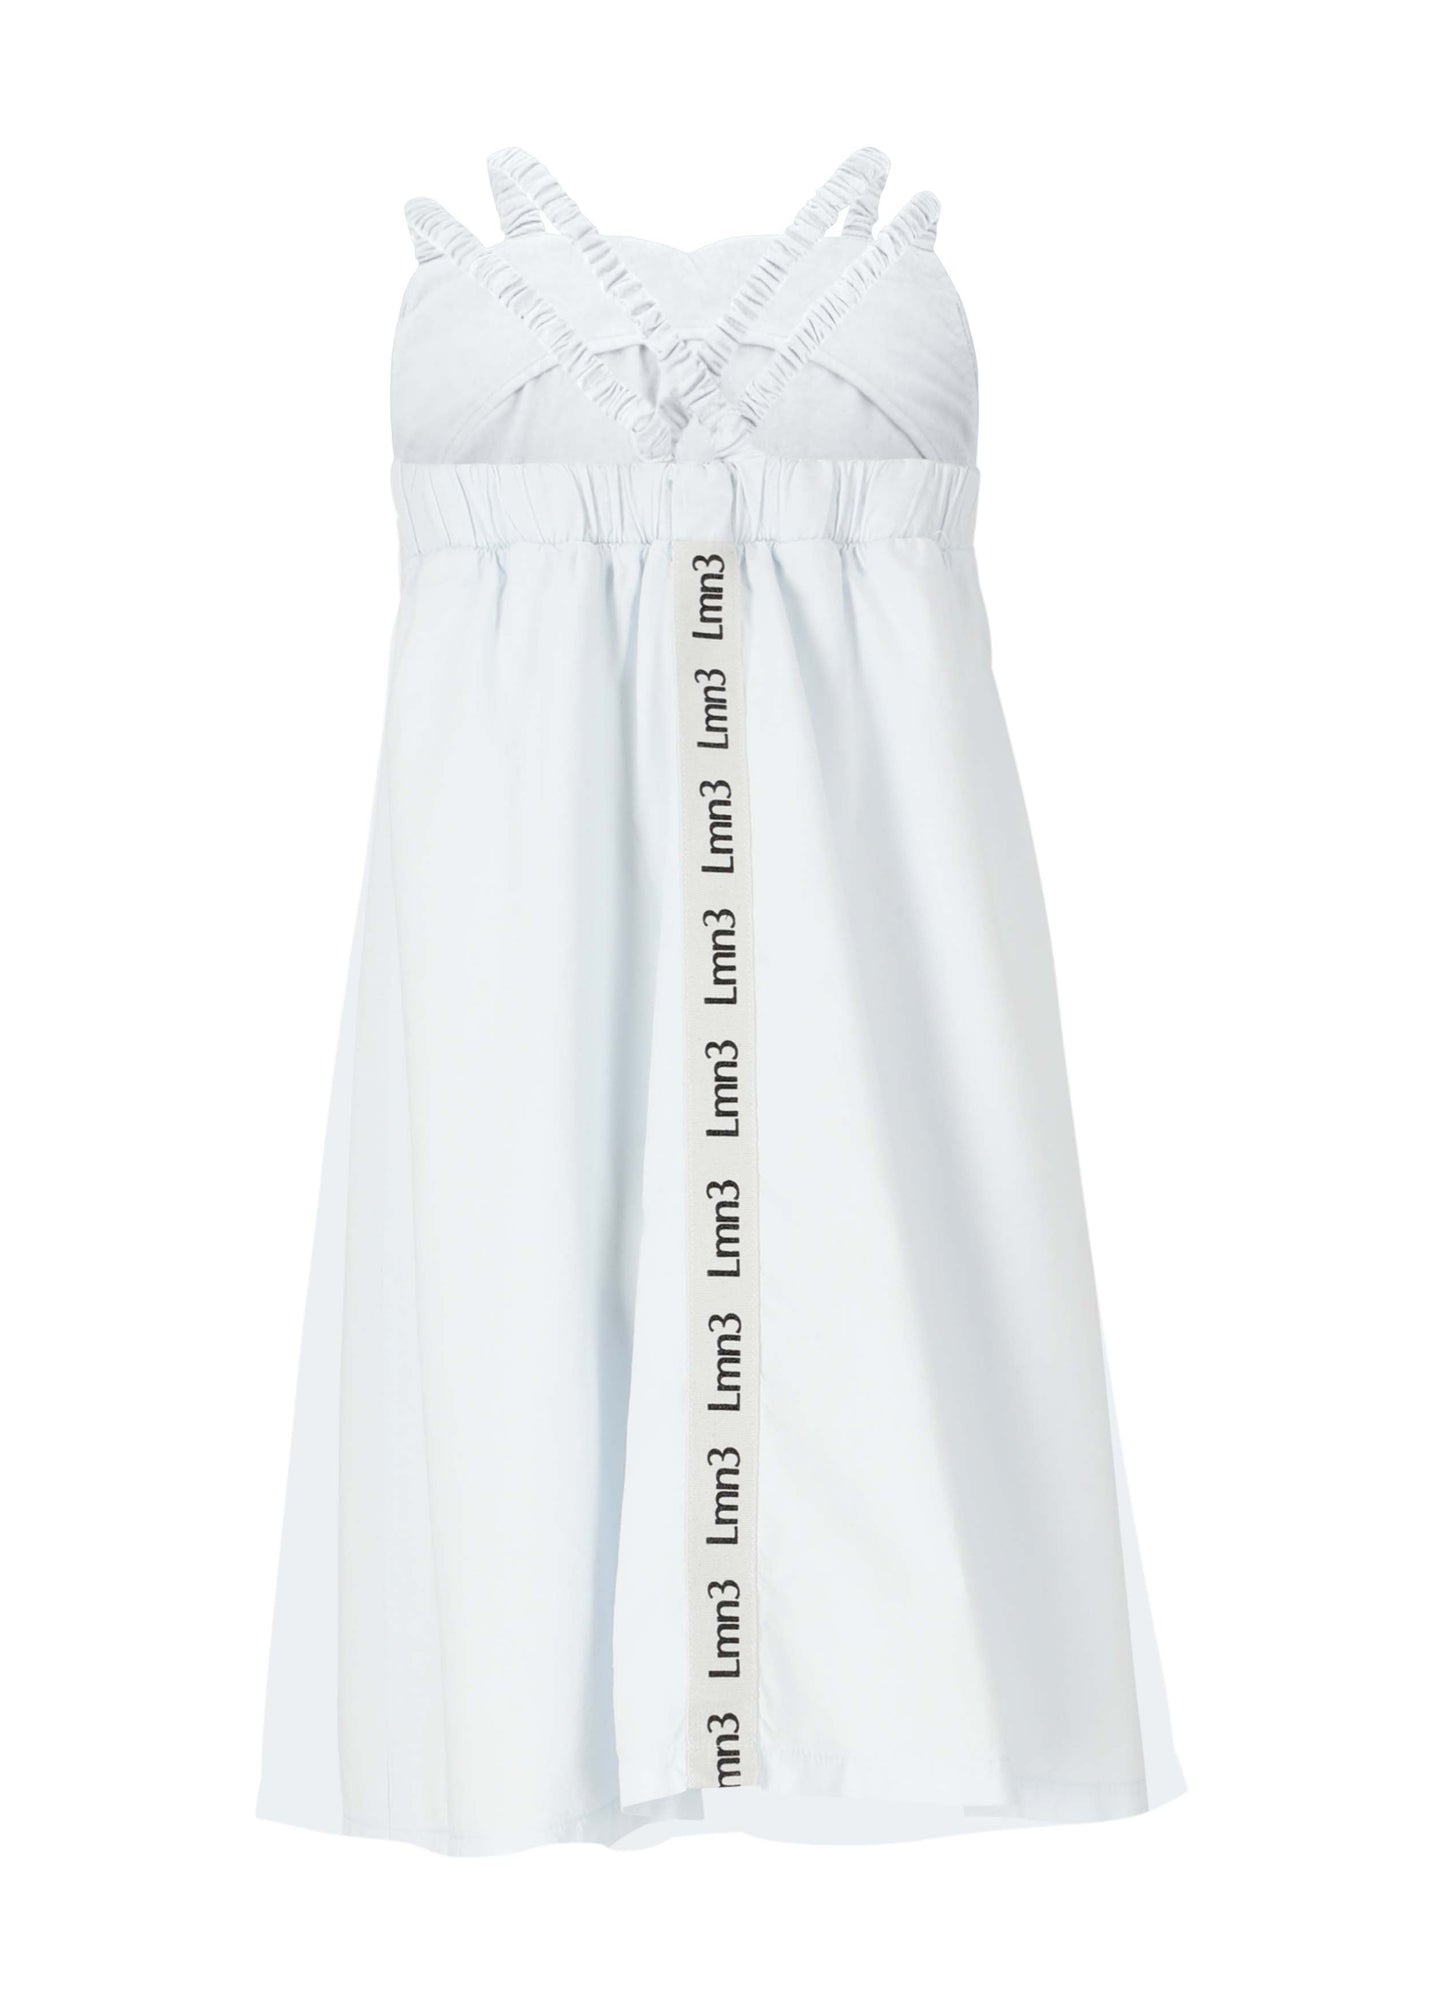 Dress No. 14 - Celeste Dresses LMN3 